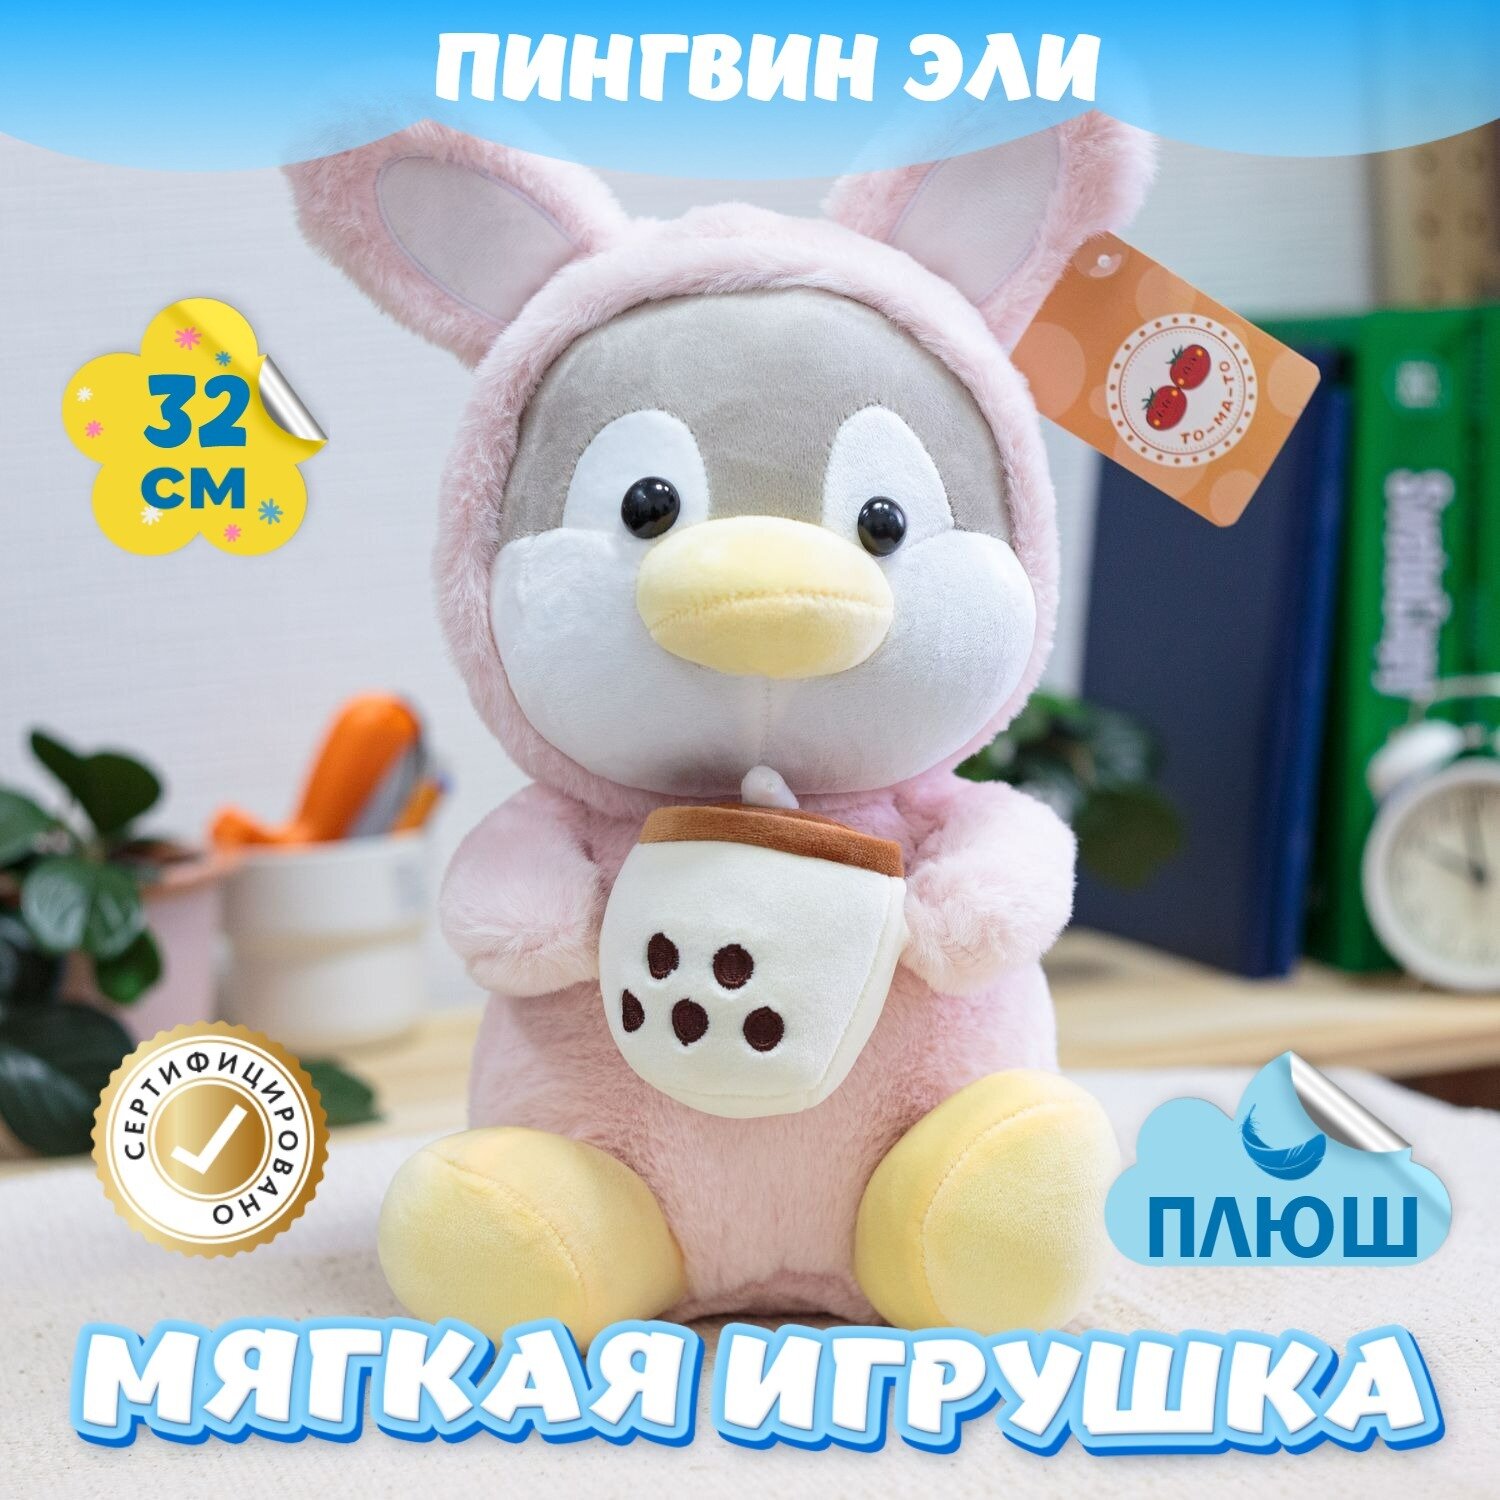 Мягкая игрушка Пингвин для девочек и мальчиков / Плюшевый Пингвиненок для детей KiDWoW розовый 32см